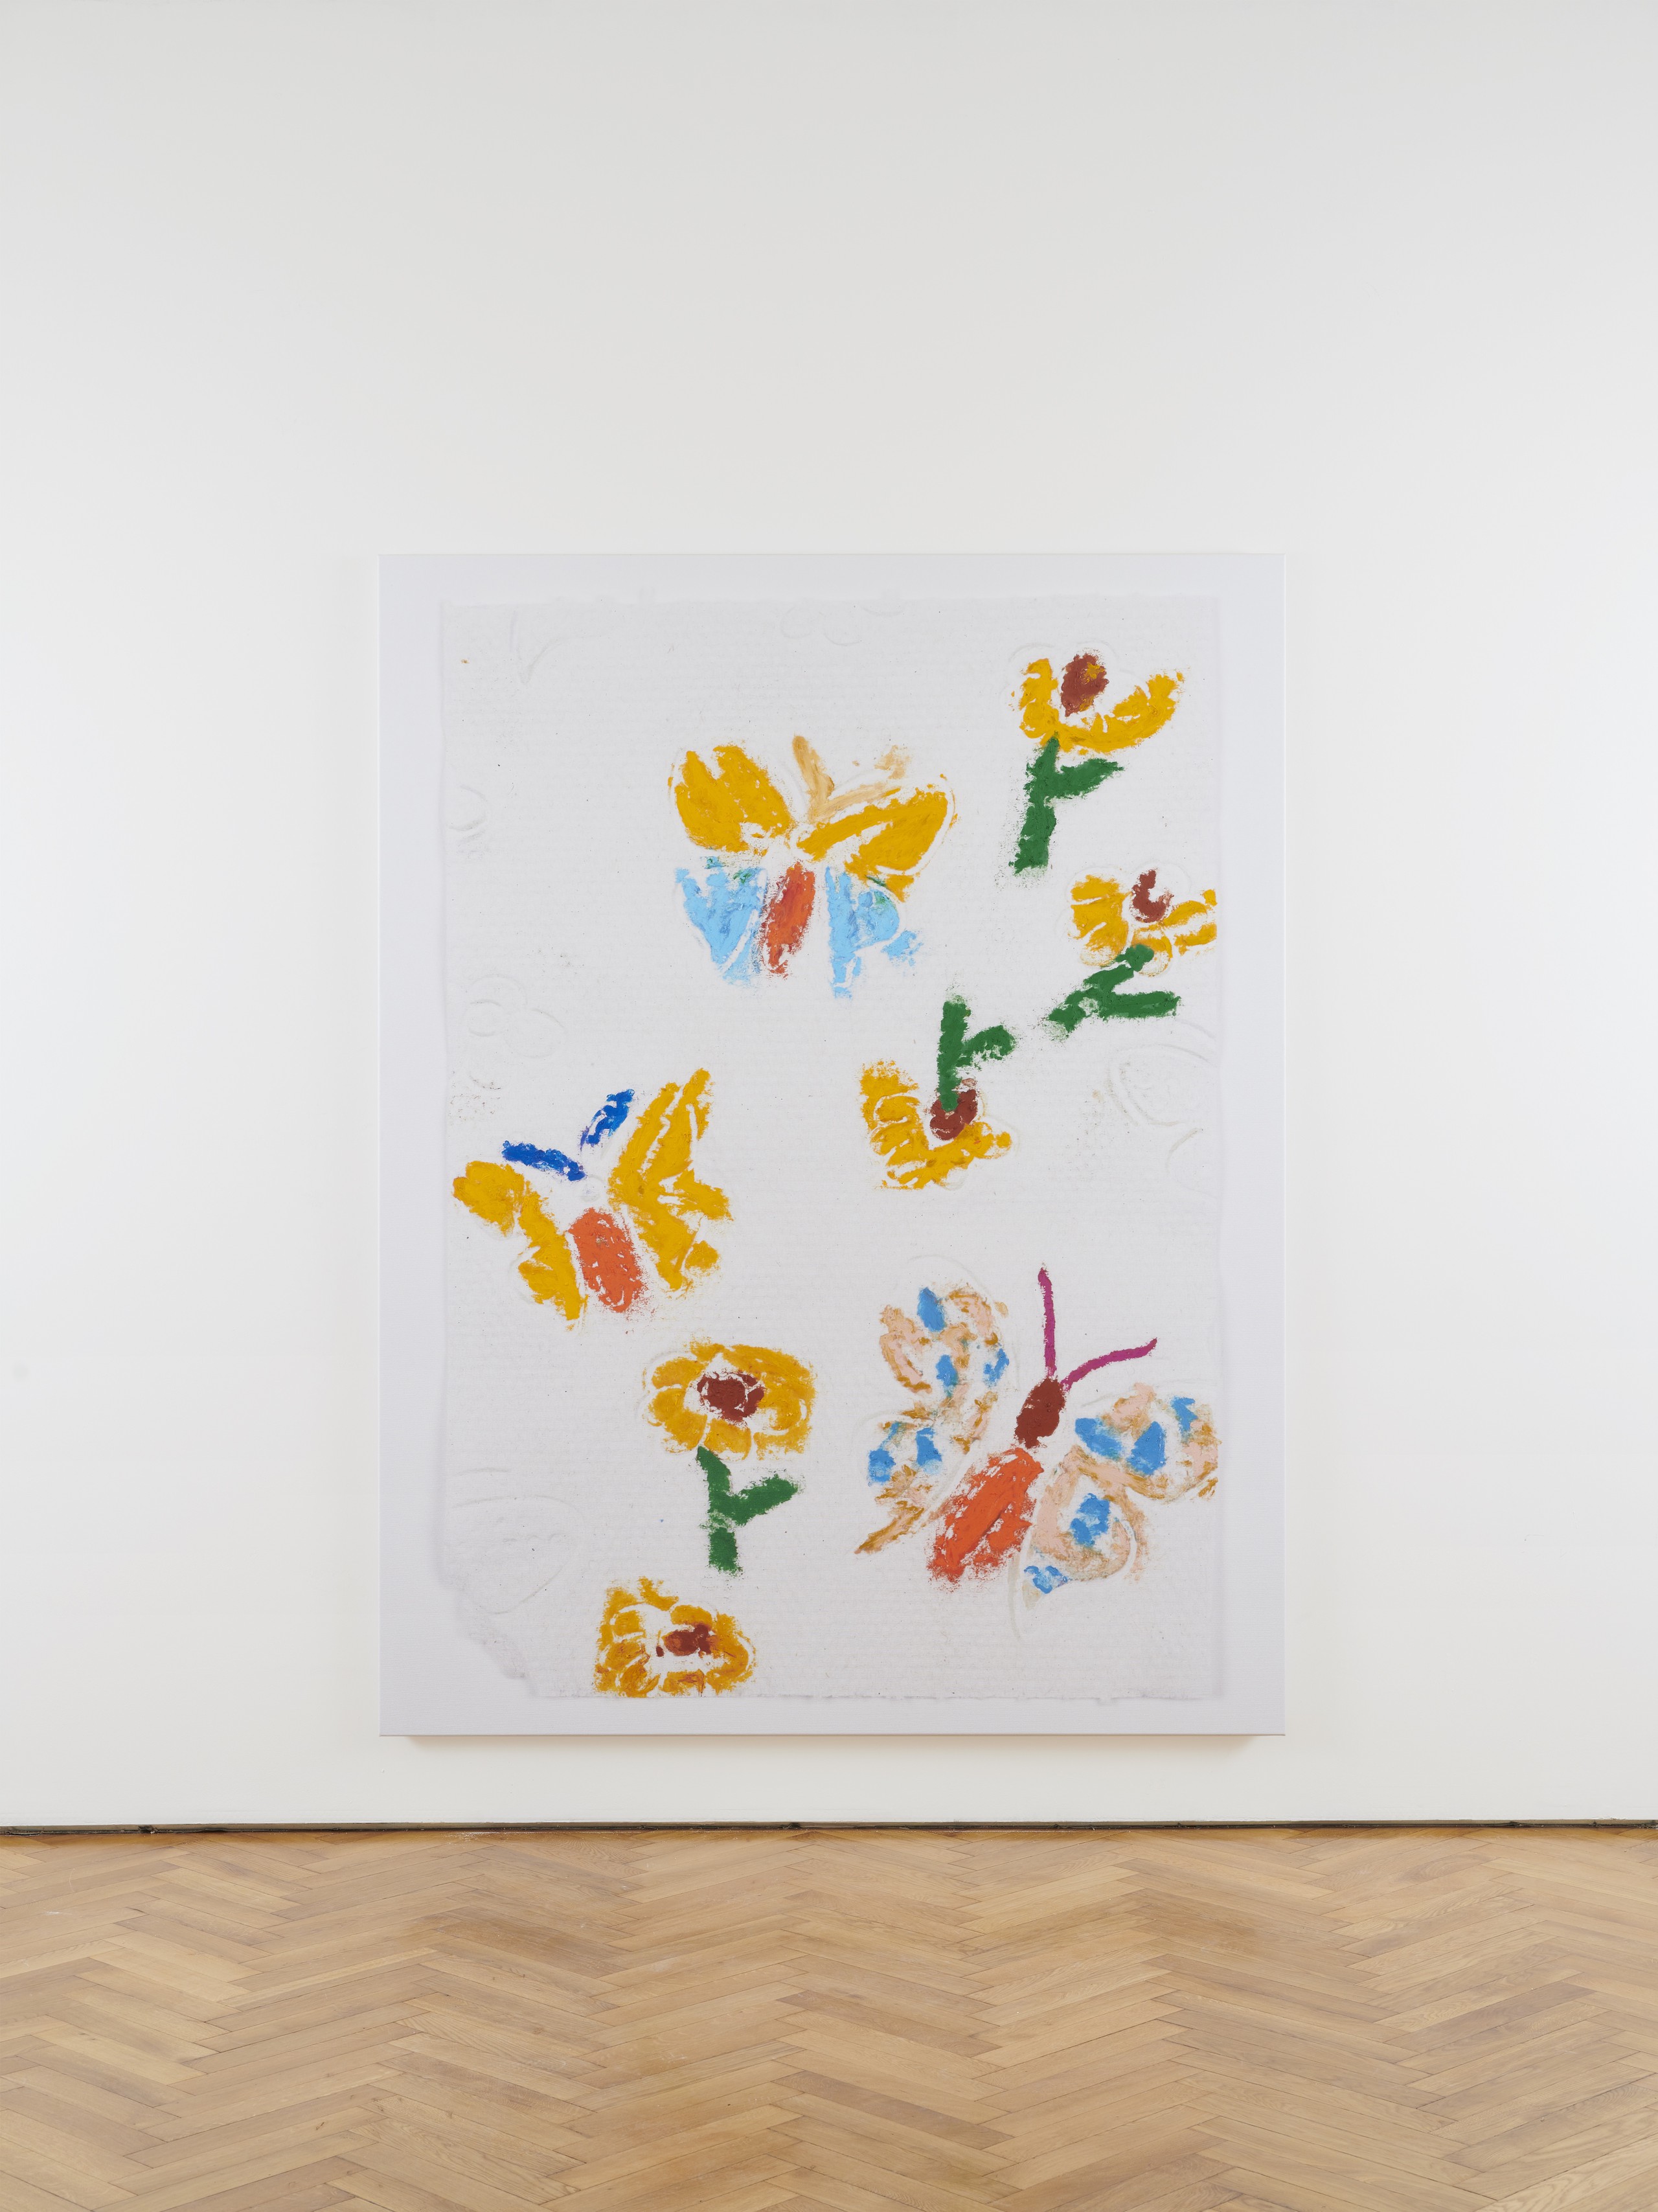 Kaspar Müller, Untitled, 2020, UV cured ink and Sennelier oil pastel on canvas, 210 x 160 x 3 cm